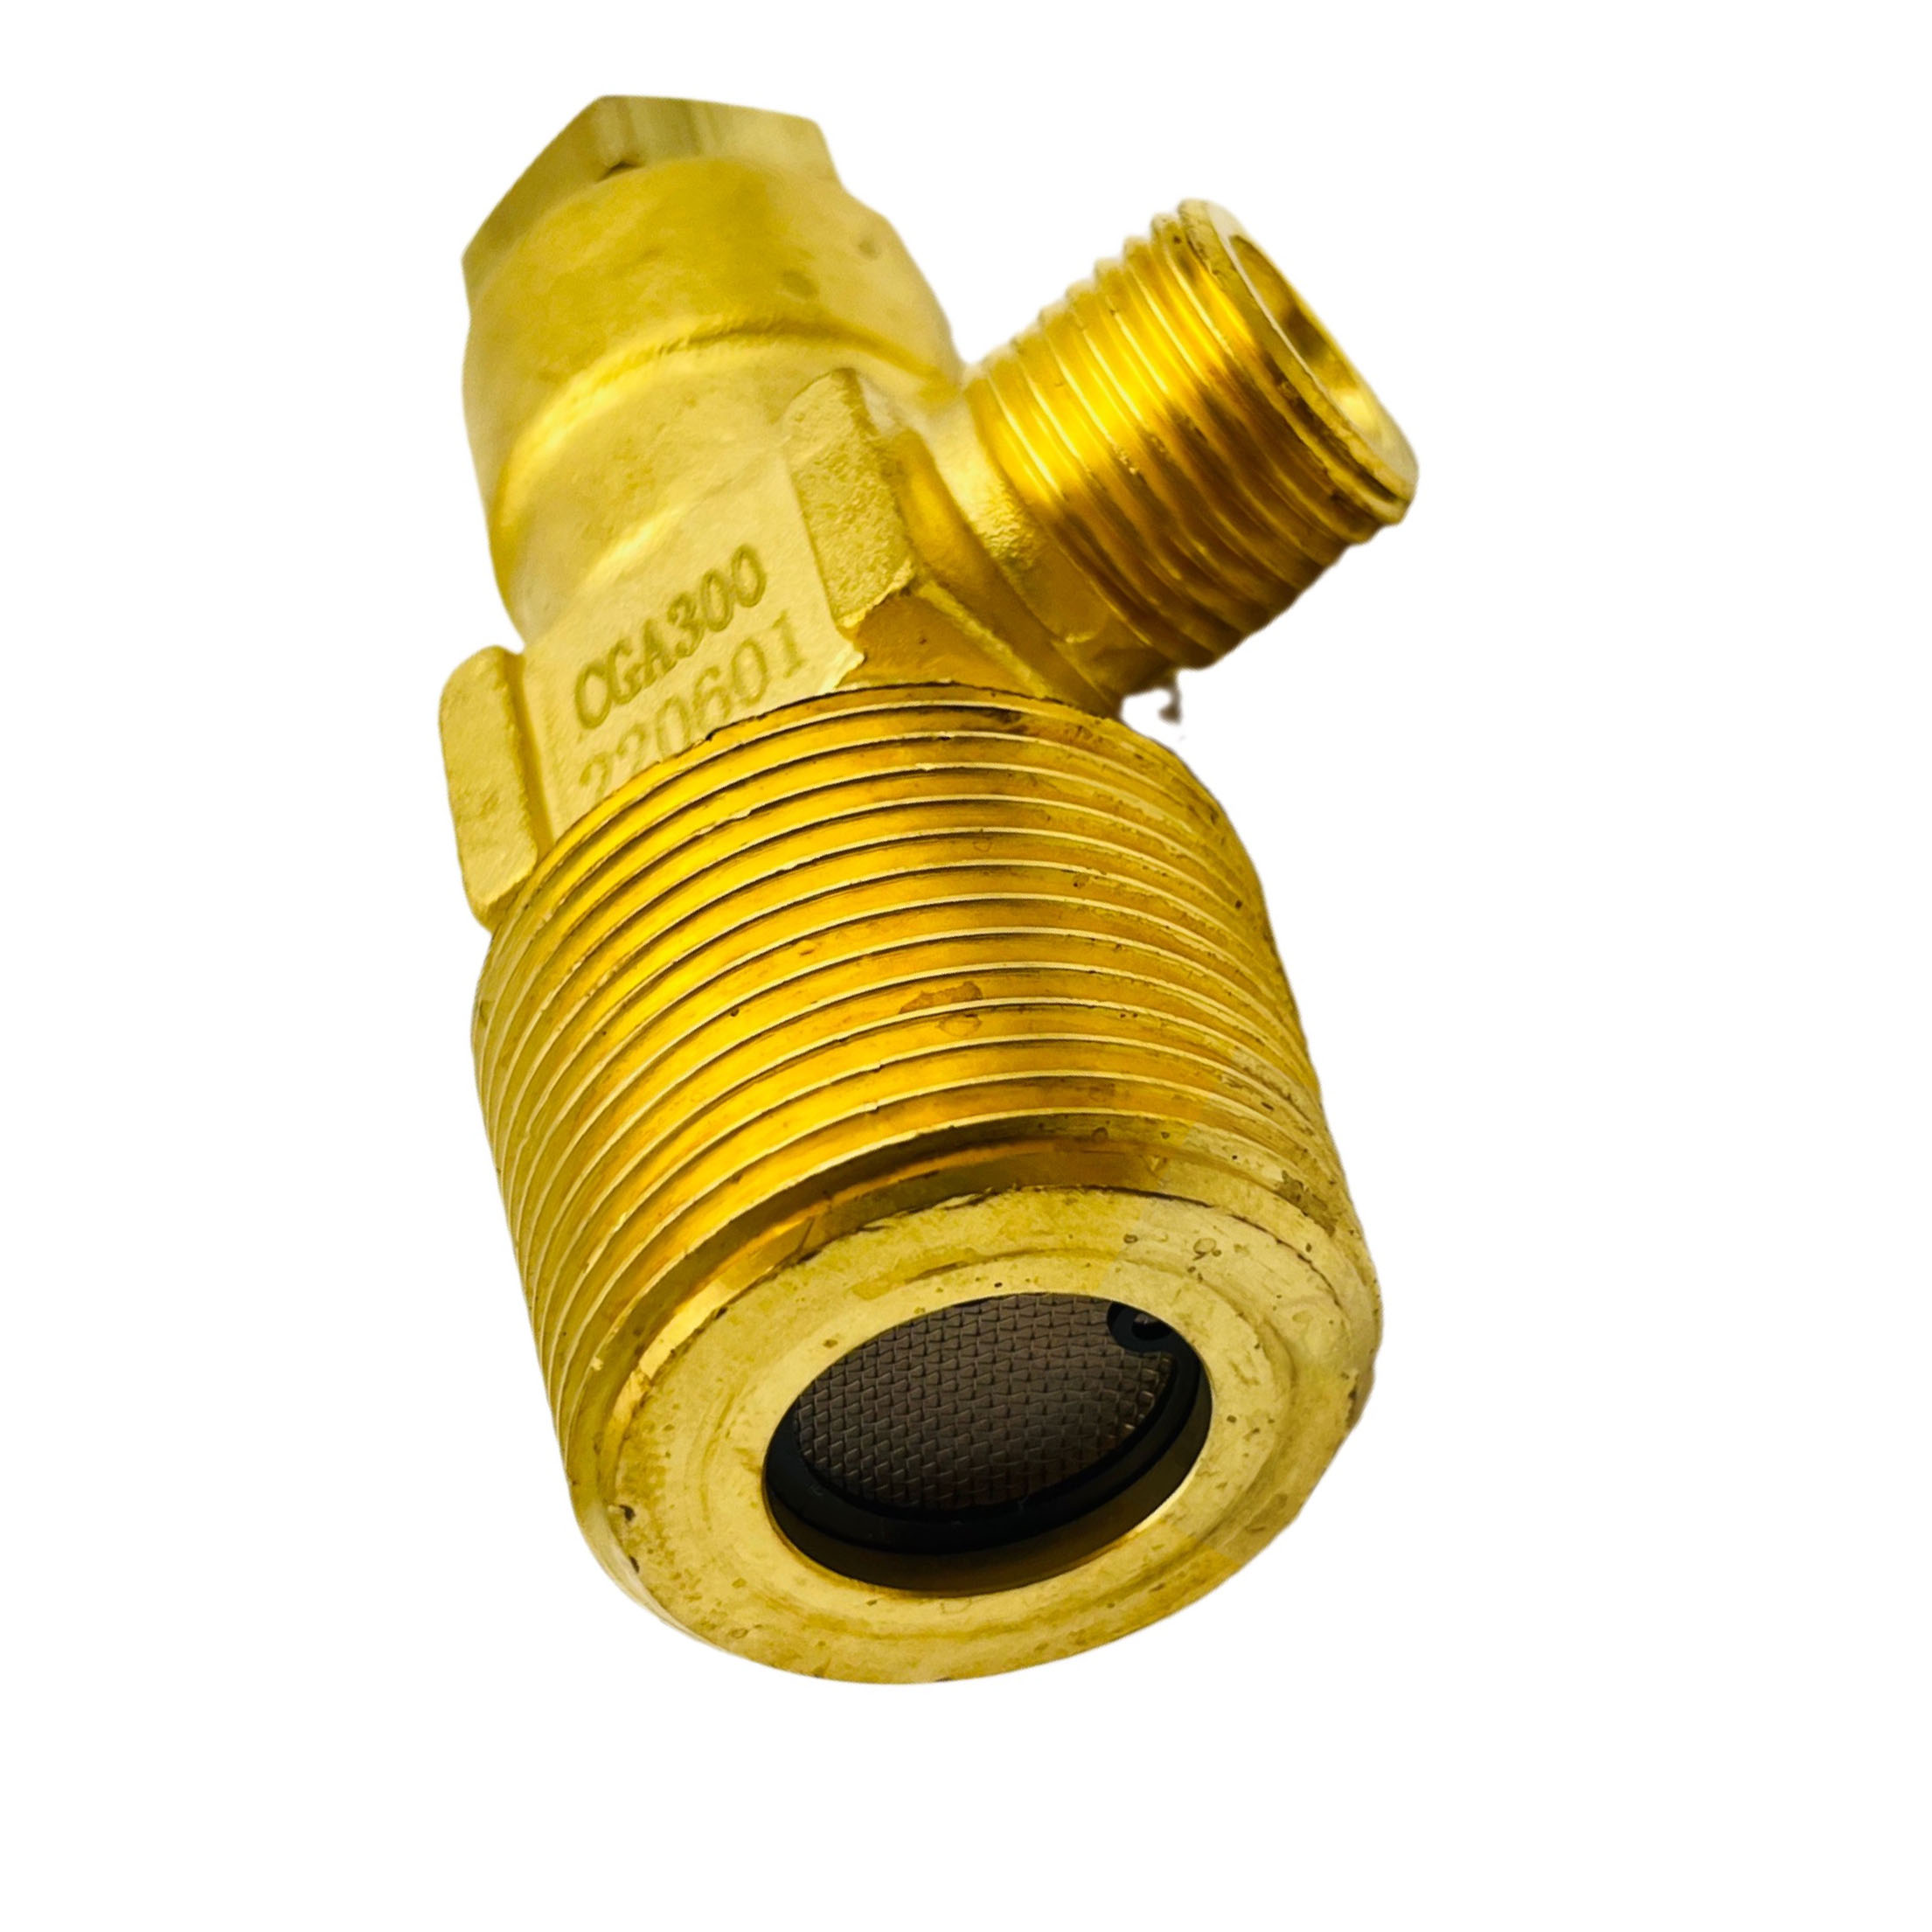 CGA300 High Pressure Industrial Brass C2H2 Acetylene Cylinder Valve